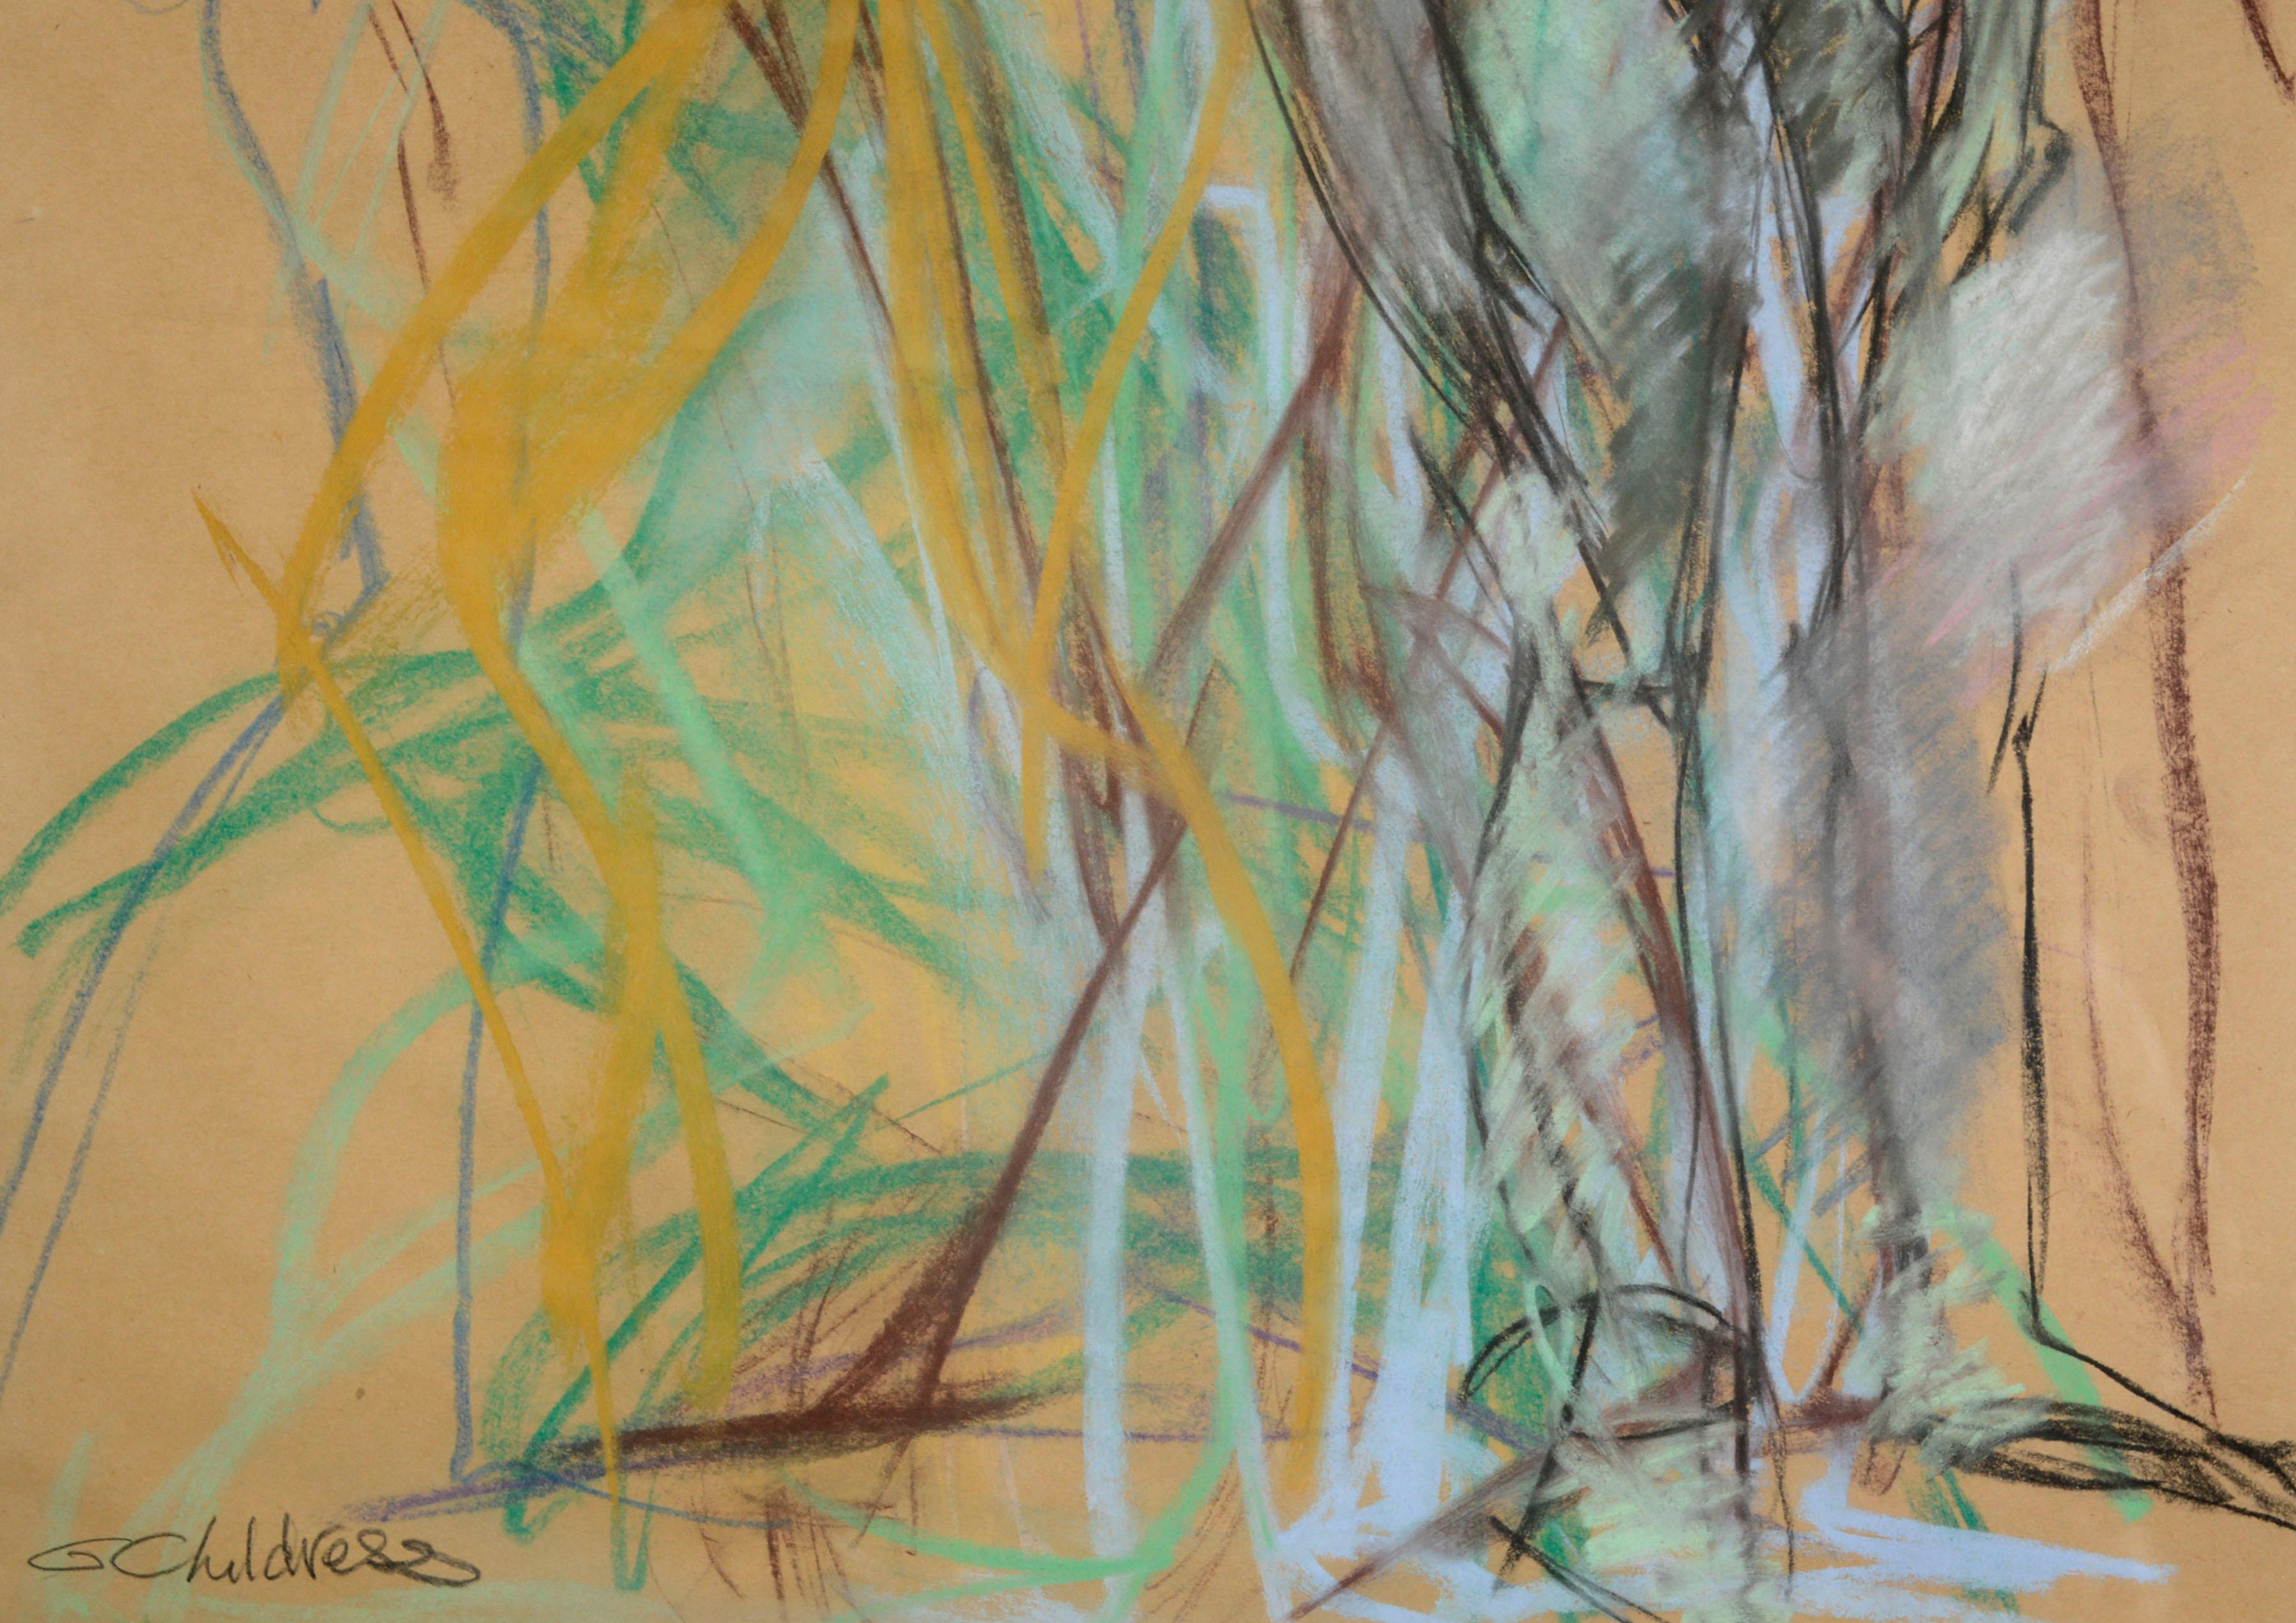 Dynamische und farbenfrohe abstrakt-expressionistische figurale Pastellzeichnung von Gayel Childress (Amerikaner, 20./21. Jahrhundert) aus Ojai, Kalifornien. Die Figuren in verschiedenen gestischen Posen sind mit lebhaftem Pastell